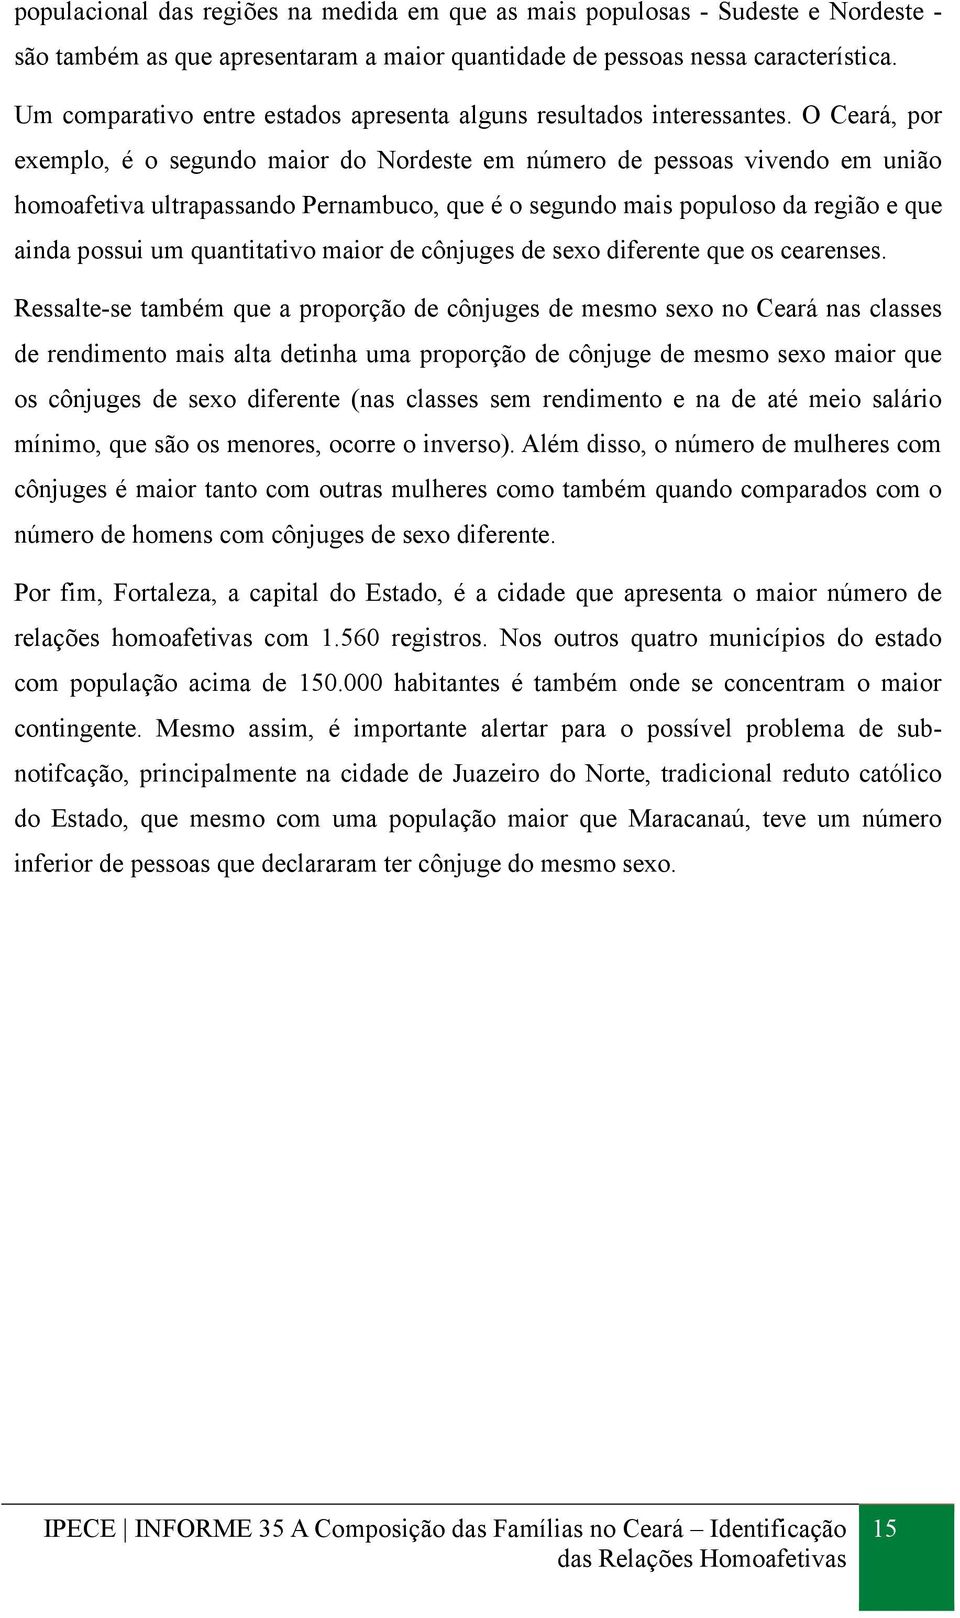 O Ceará, por exemplo, é o segundo maior do Nordeste em número de pessoas vivendo em união homoafetiva ultrapassando Pernambuco, que é o segundo mais populoso da região e que ainda possui um